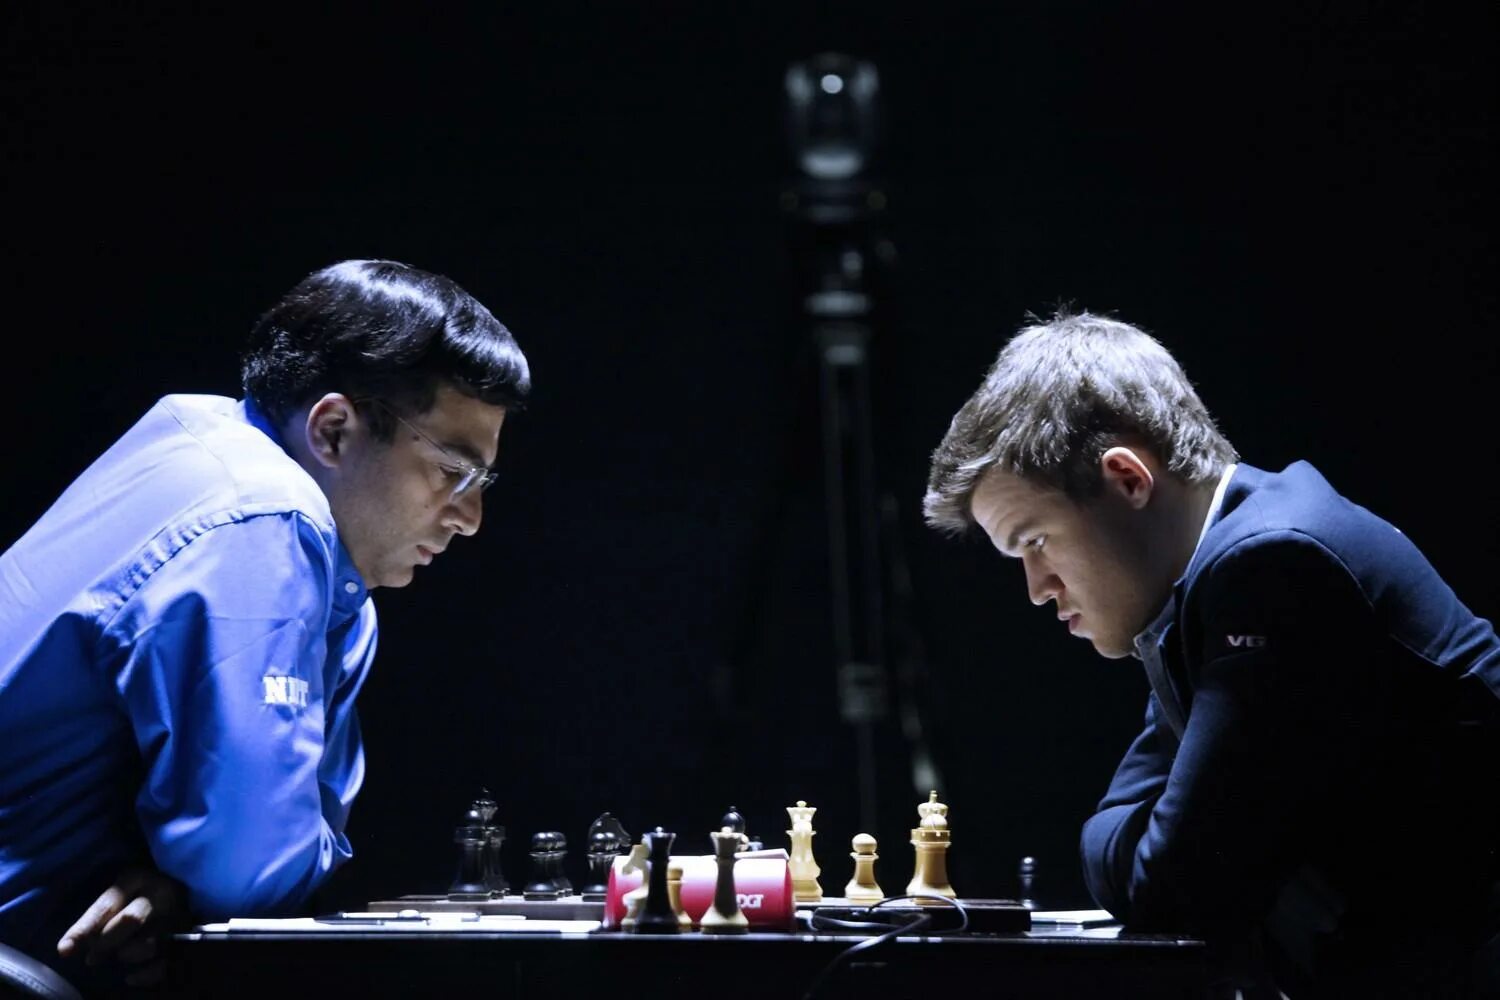 We like playing chess. Виши Ананд Карлсен. Магнус Карлсен виши Ананд 2013. Карлсен Ананд 2014. Карлсен Ананд 2013 партия.